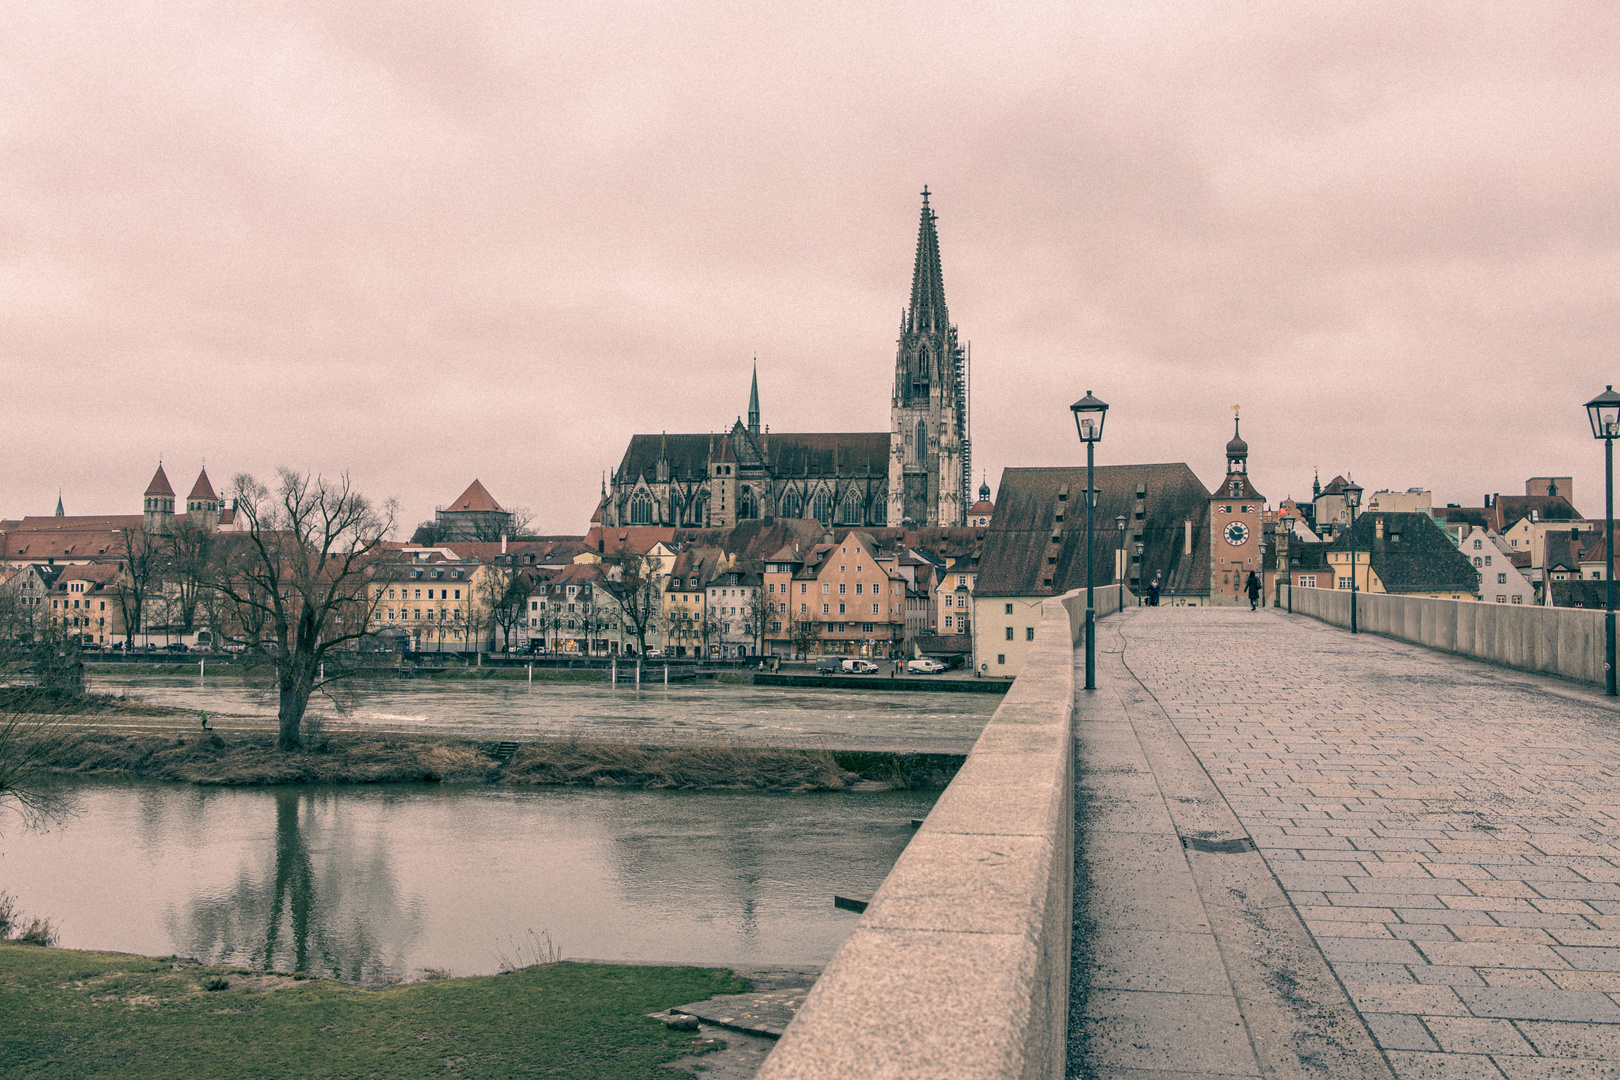 Regensburg - Über die steinerne Brücke